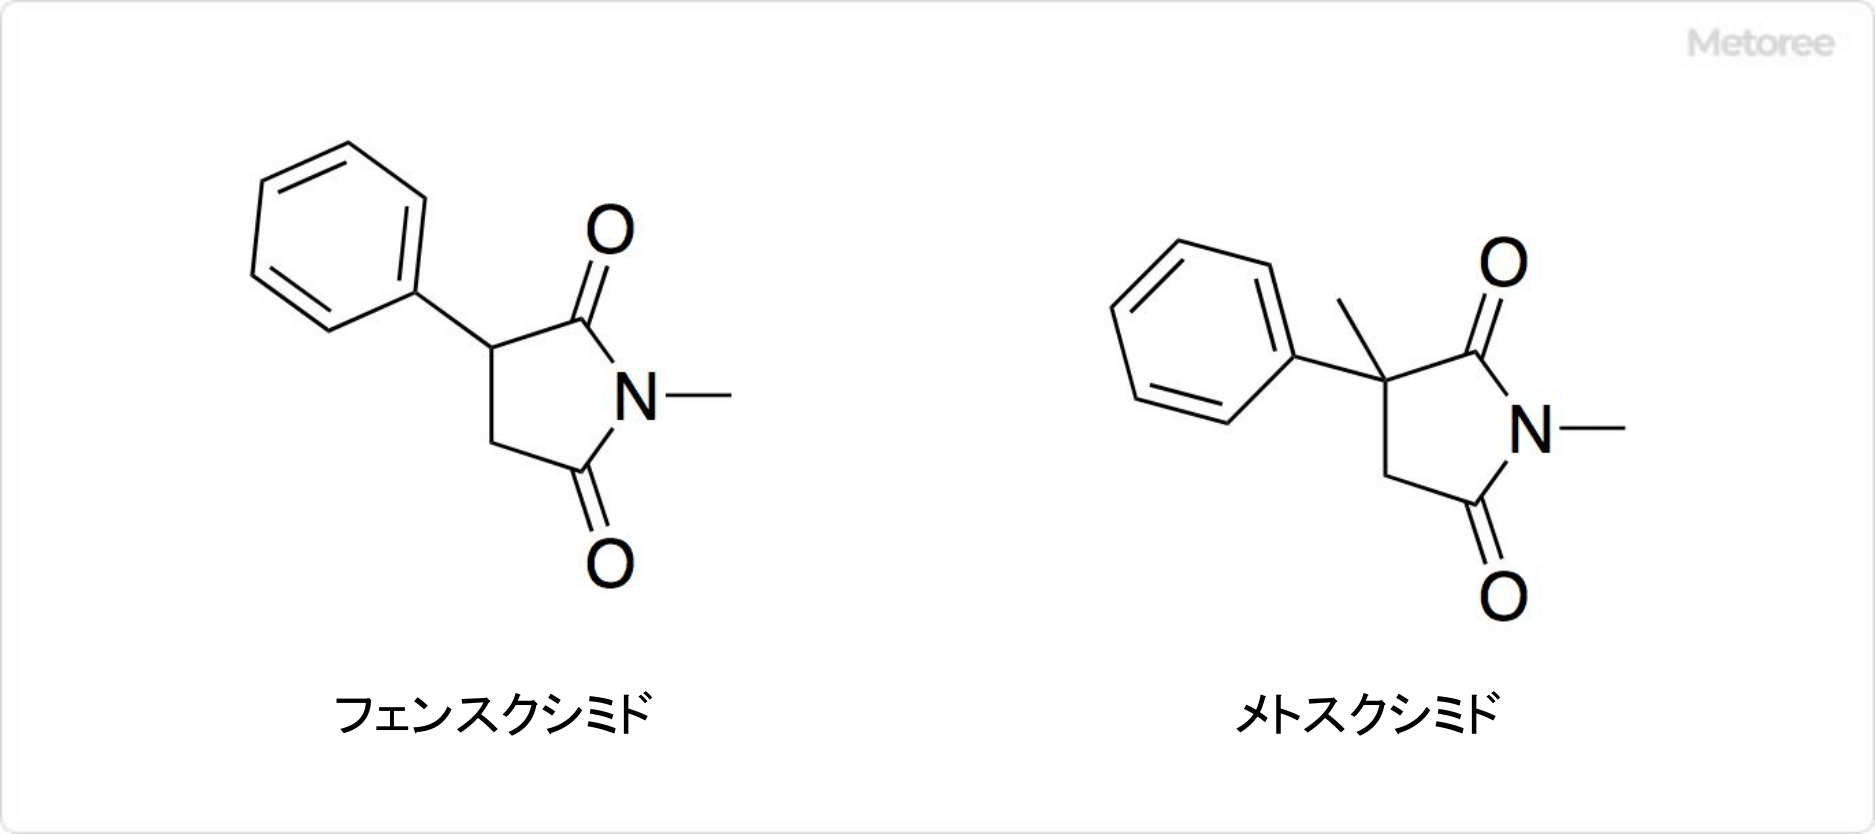 エトスクシミドの関連化合物